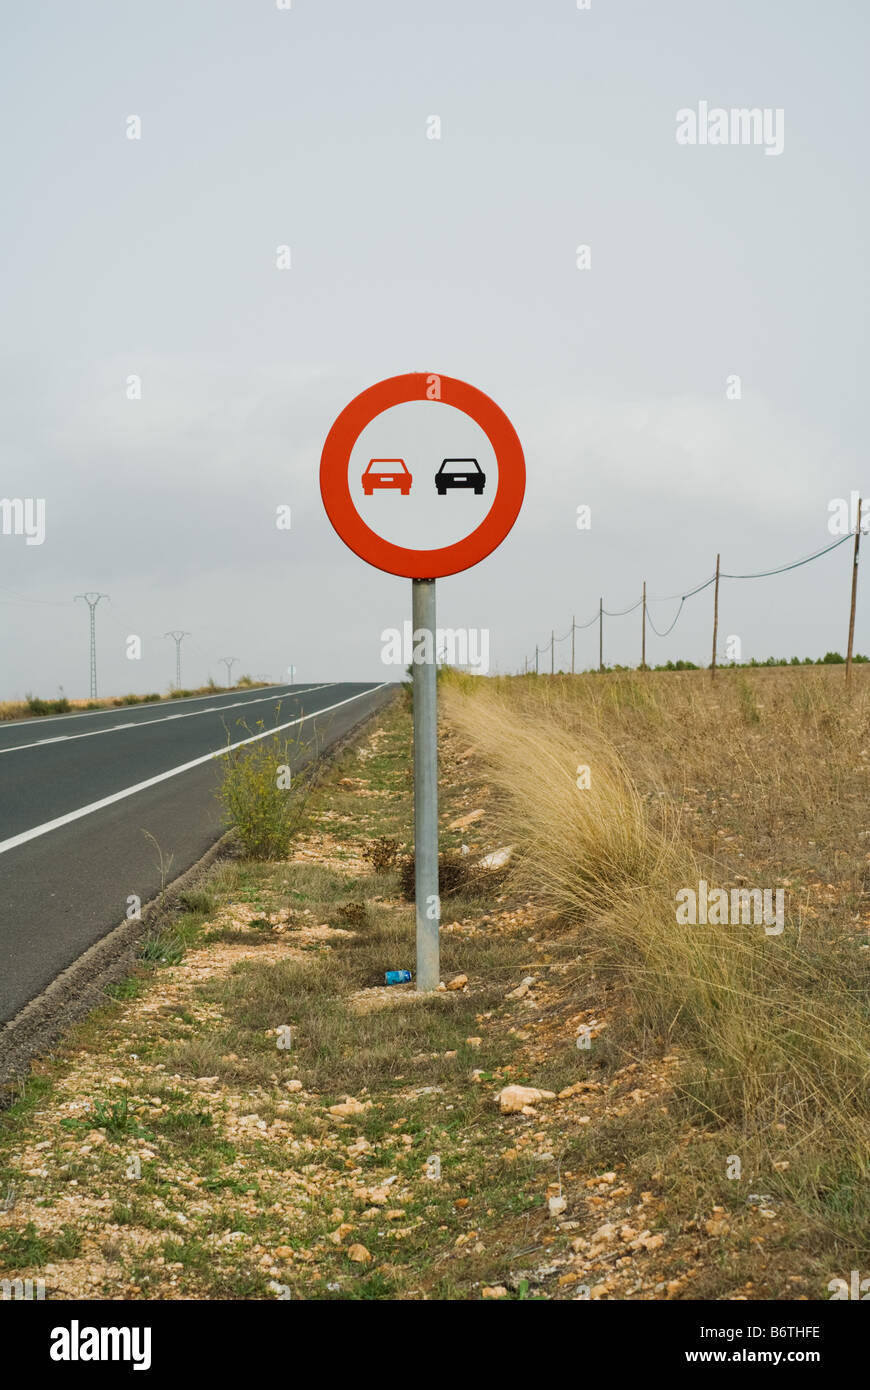 Spanish Road Sign in Almansa, Spain Stock Photo